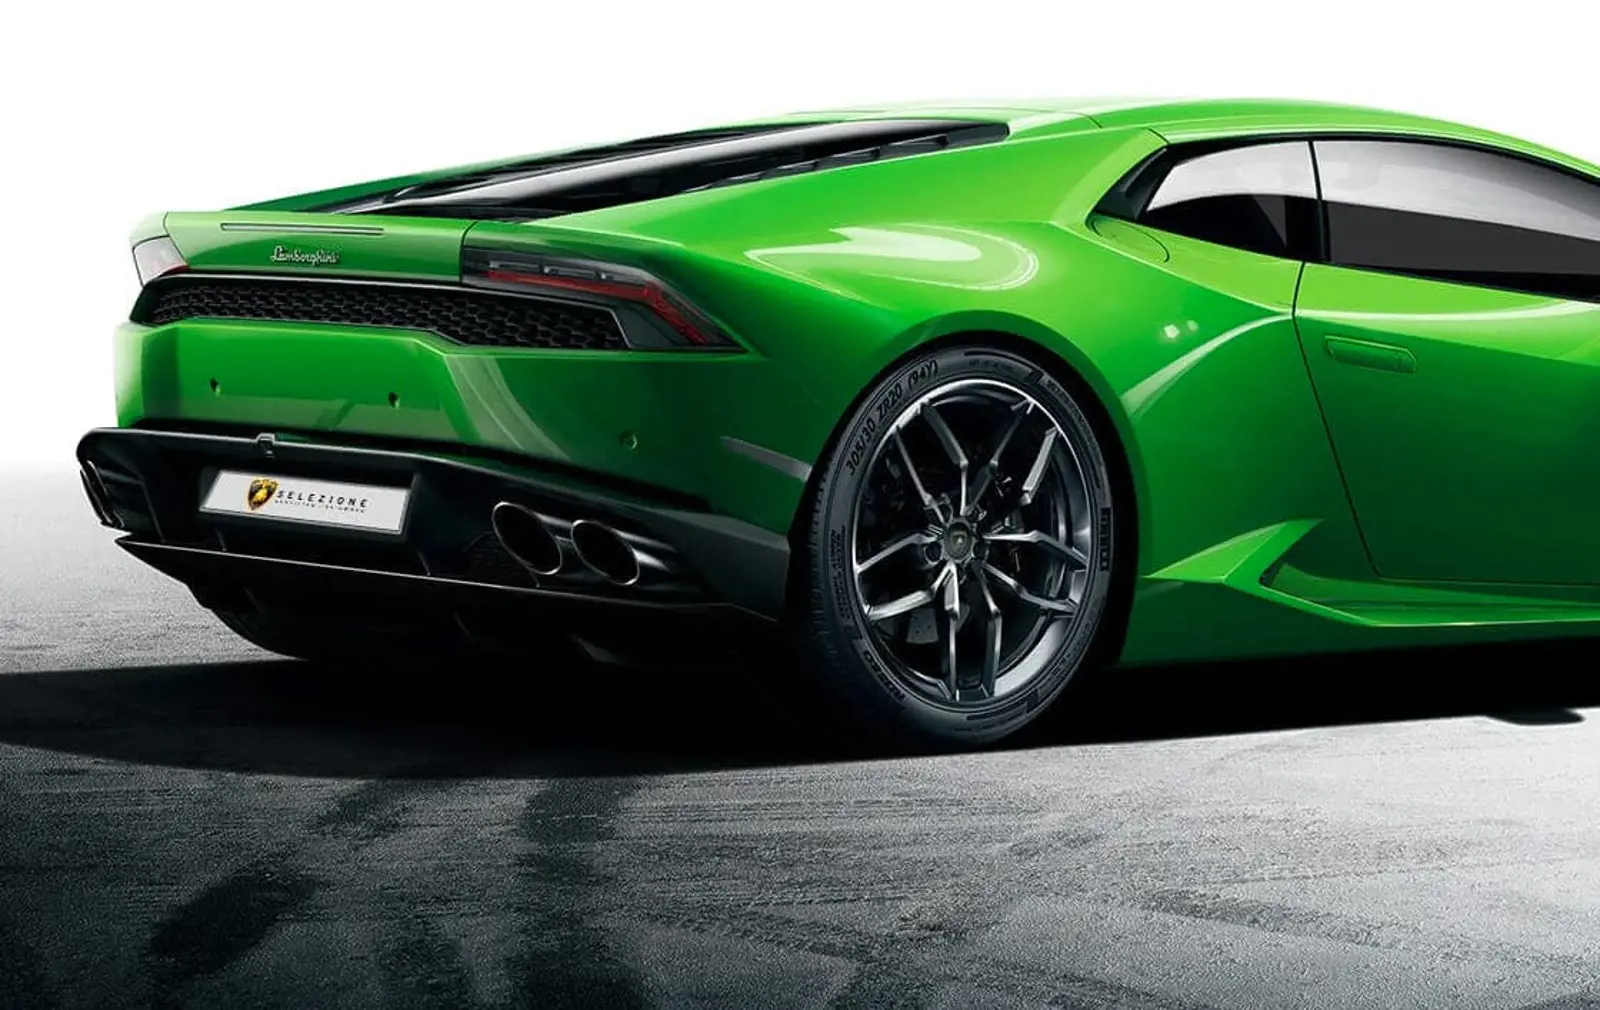 Lamborghini Selezione - Certified Pre-Owned Program at Grange